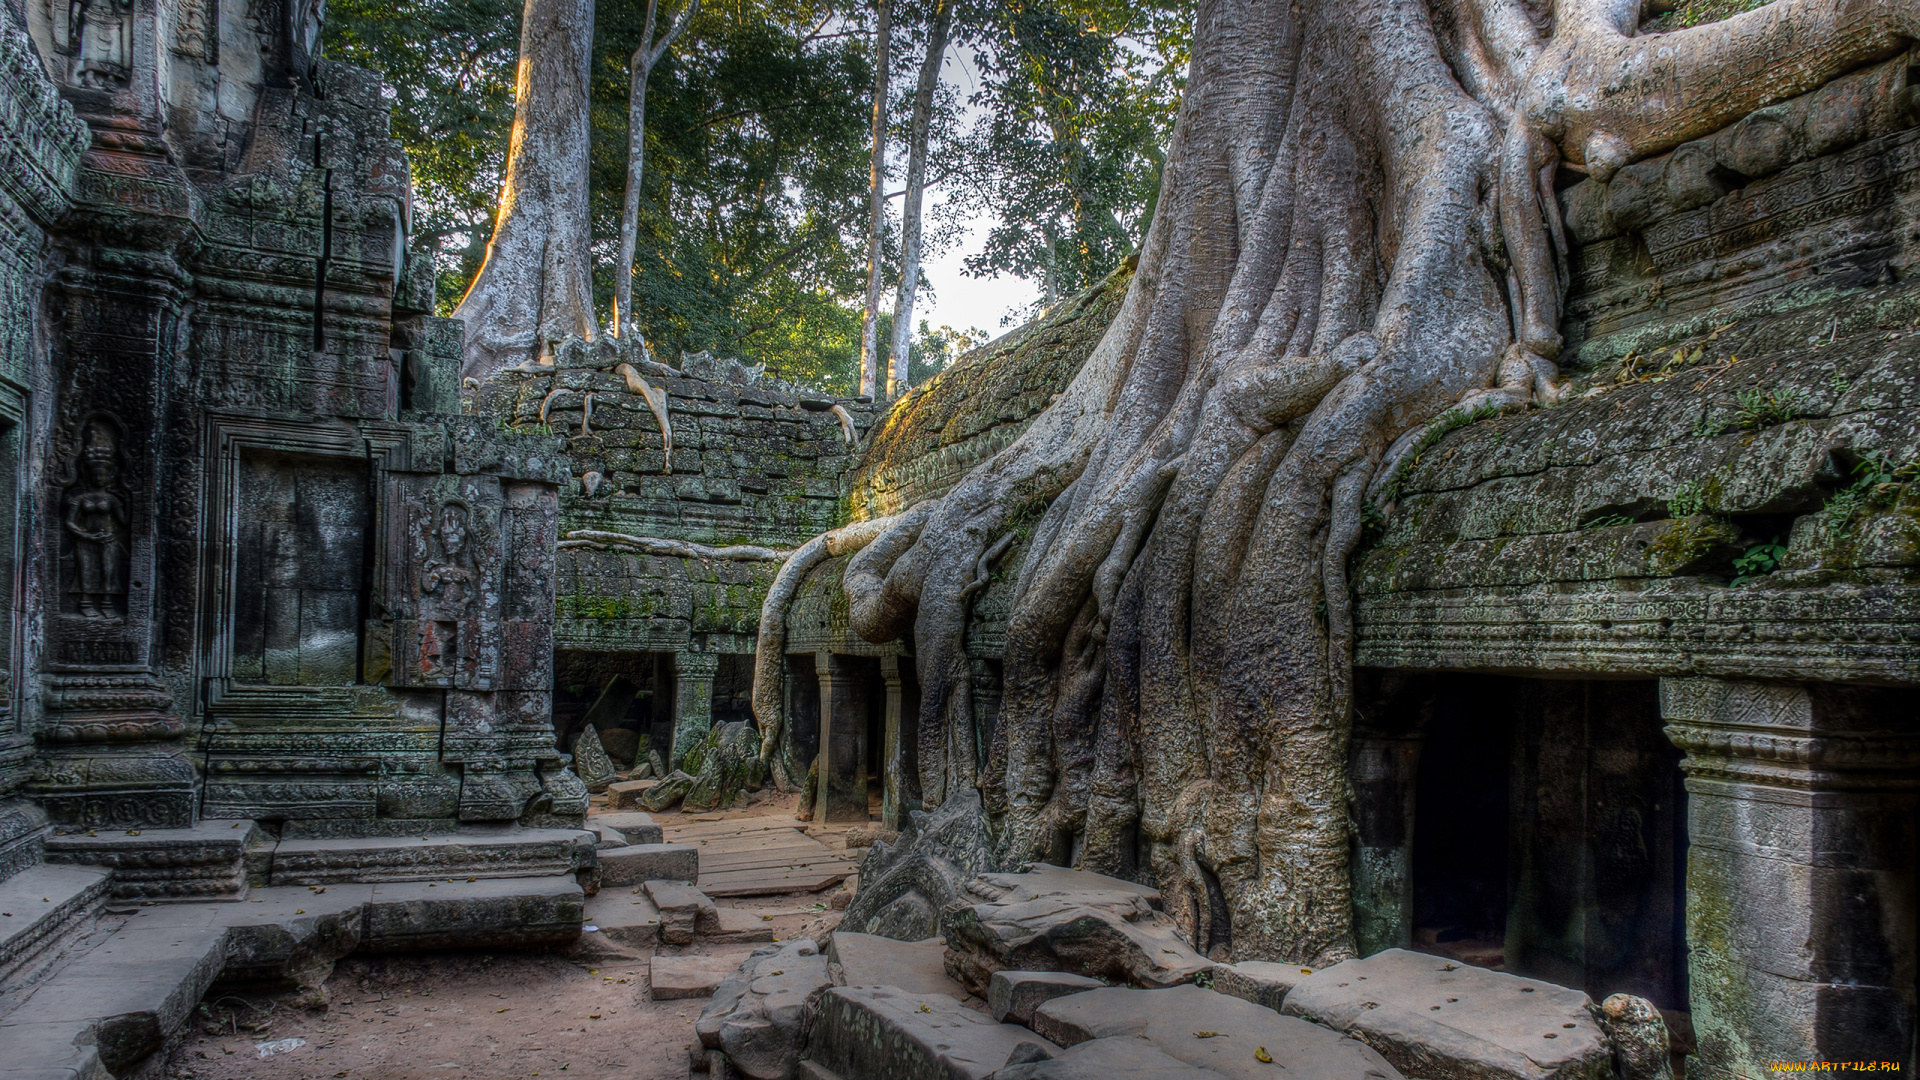 cambodia, angkor, города, -, исторические, , архитектурные, памятники, cambodia, angkor, камни, старина, памятник, культура, архитектура, дерево, корни